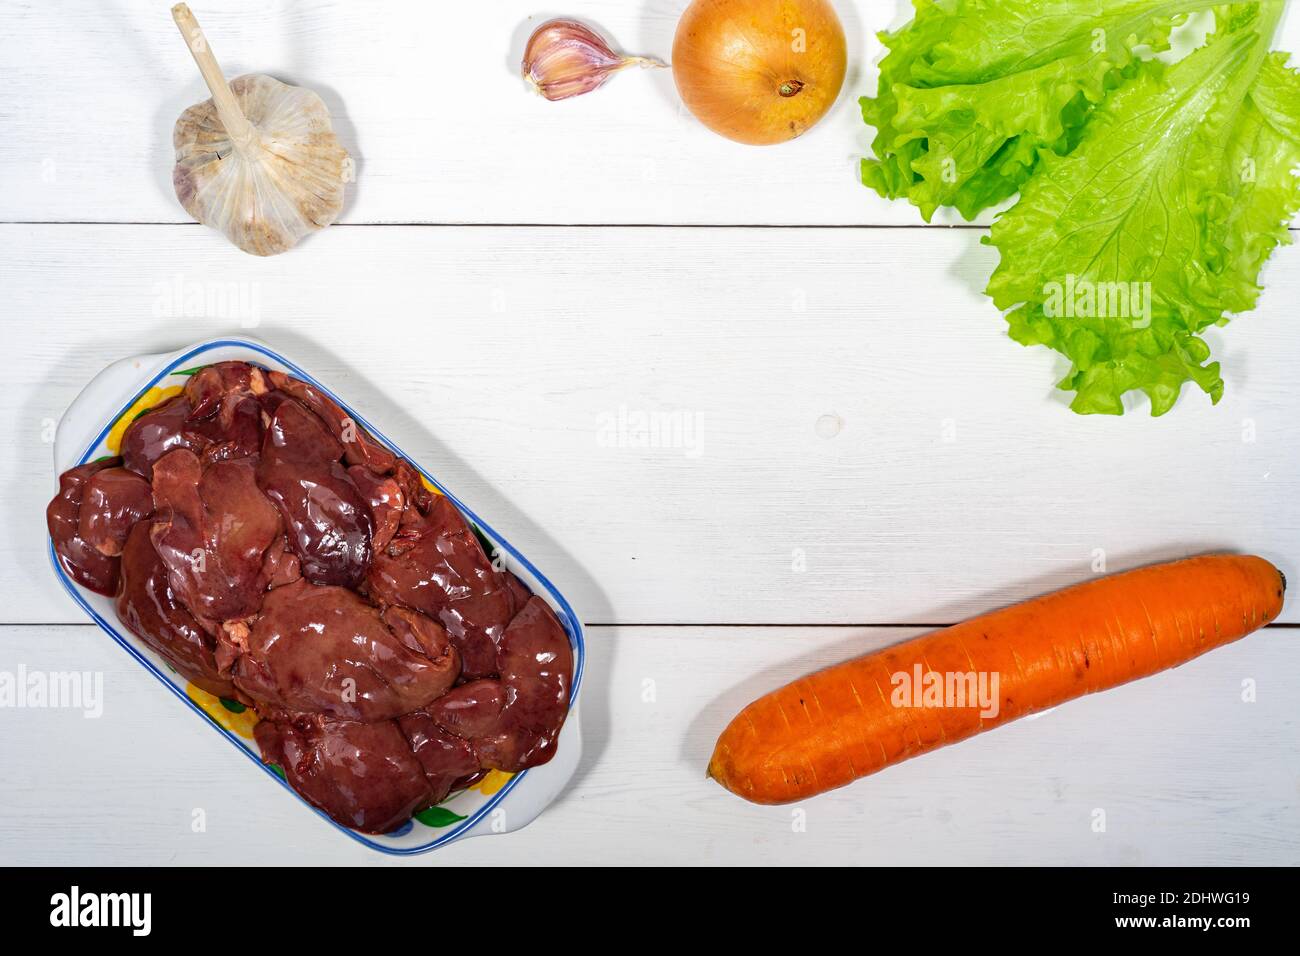 fegato di pollo e verdure su sfondo ligneo. set di cibi crudi per cucinare. spazio per testo e spazio per la copia Foto Stock